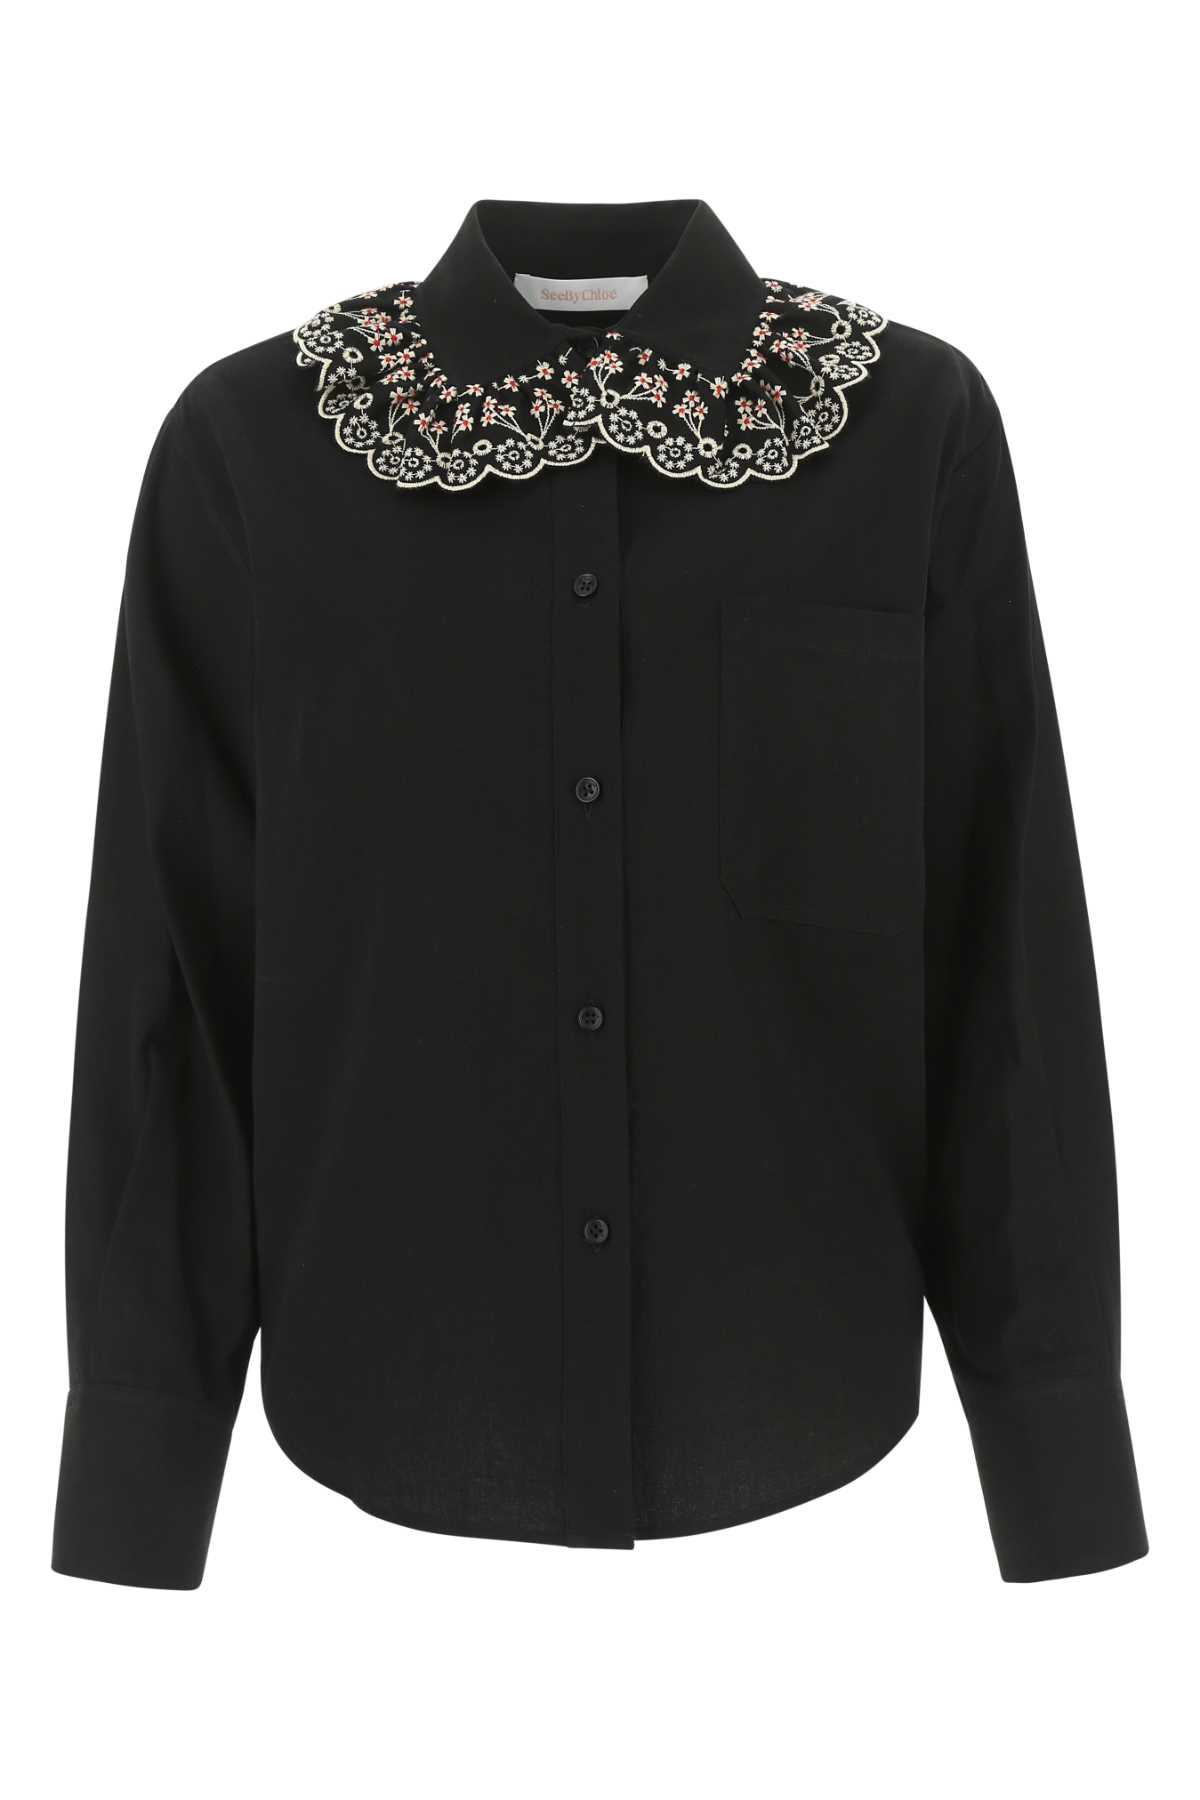 See by Chloé Black Cotton Shirt